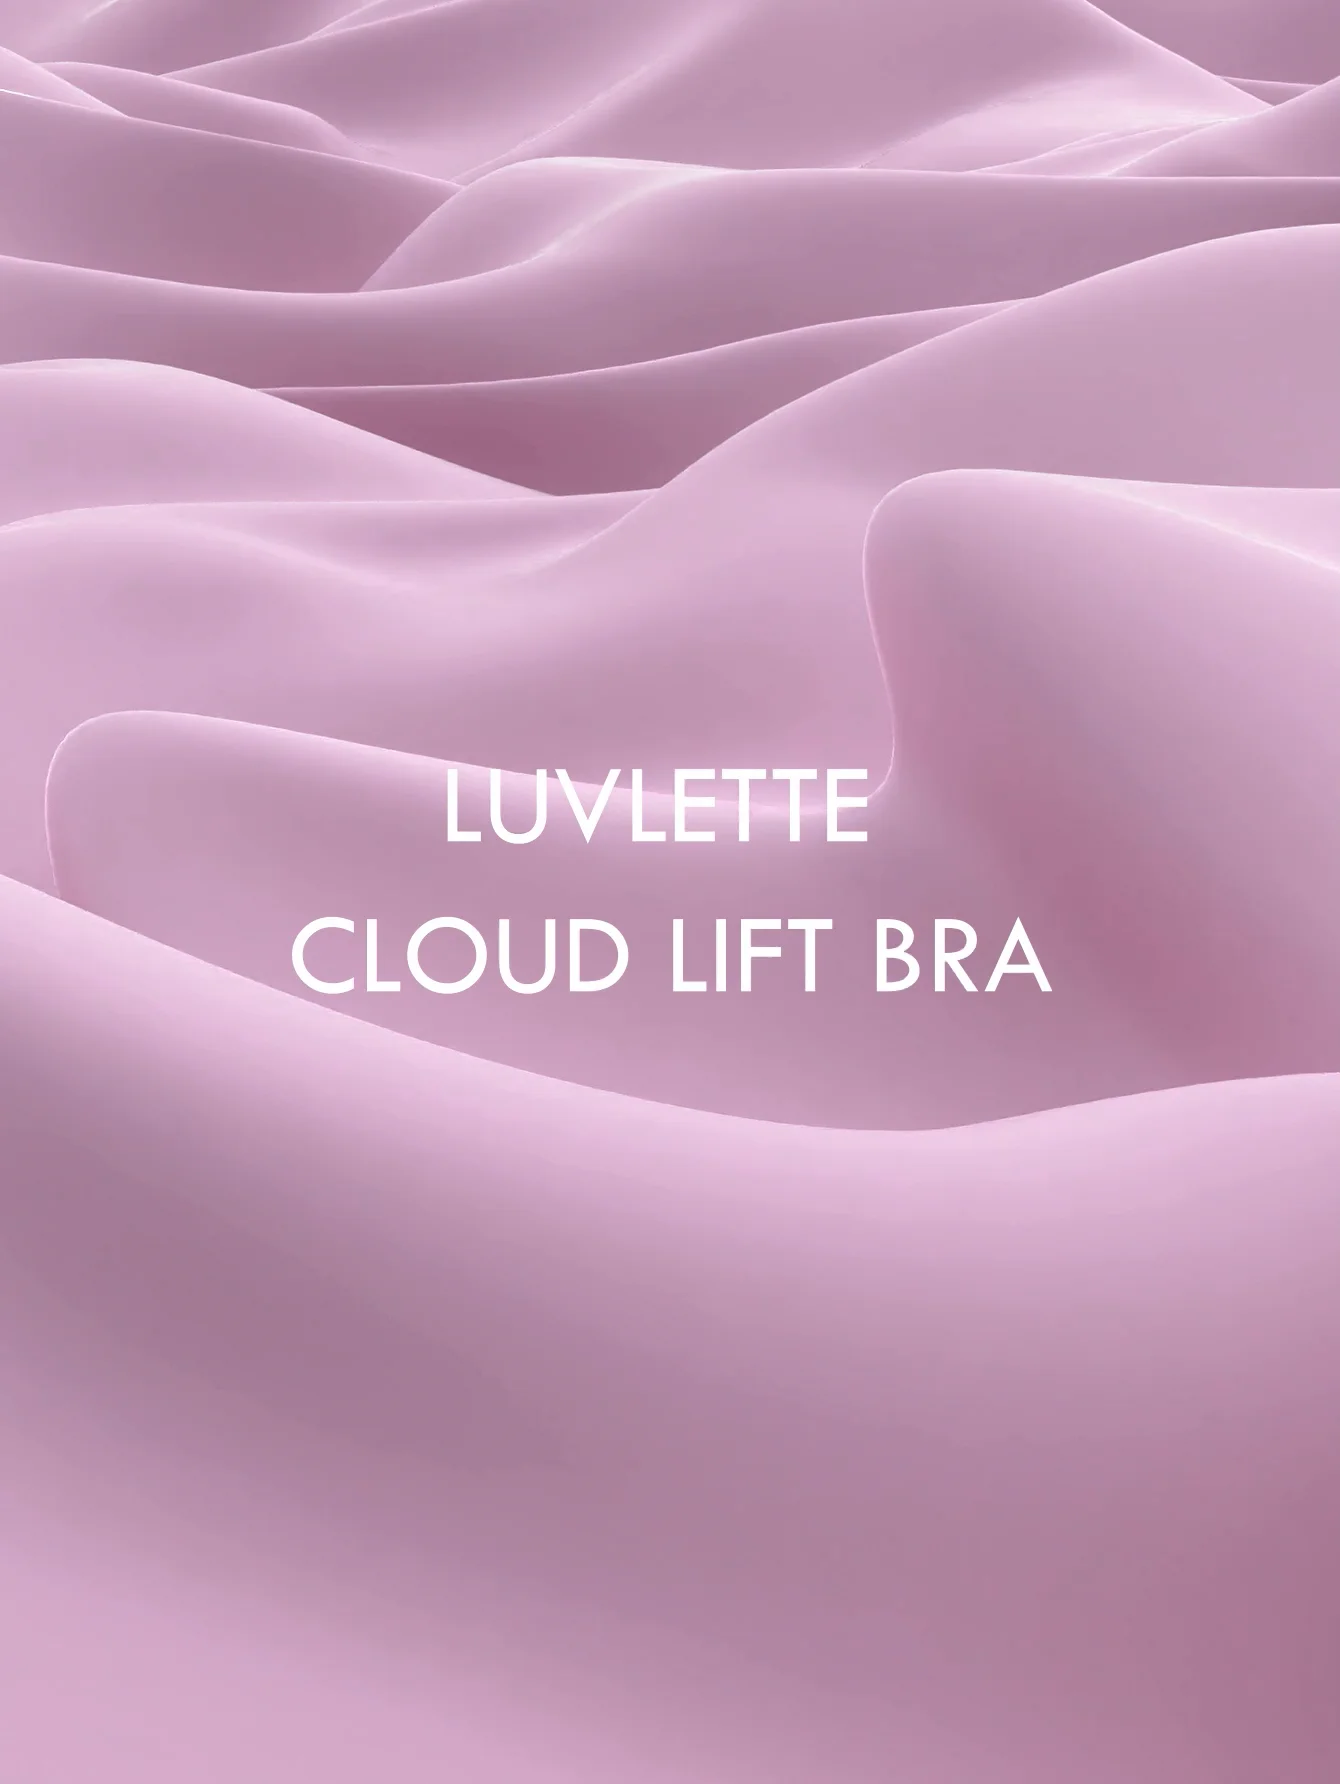 Luvlette Cloud Lift Bra